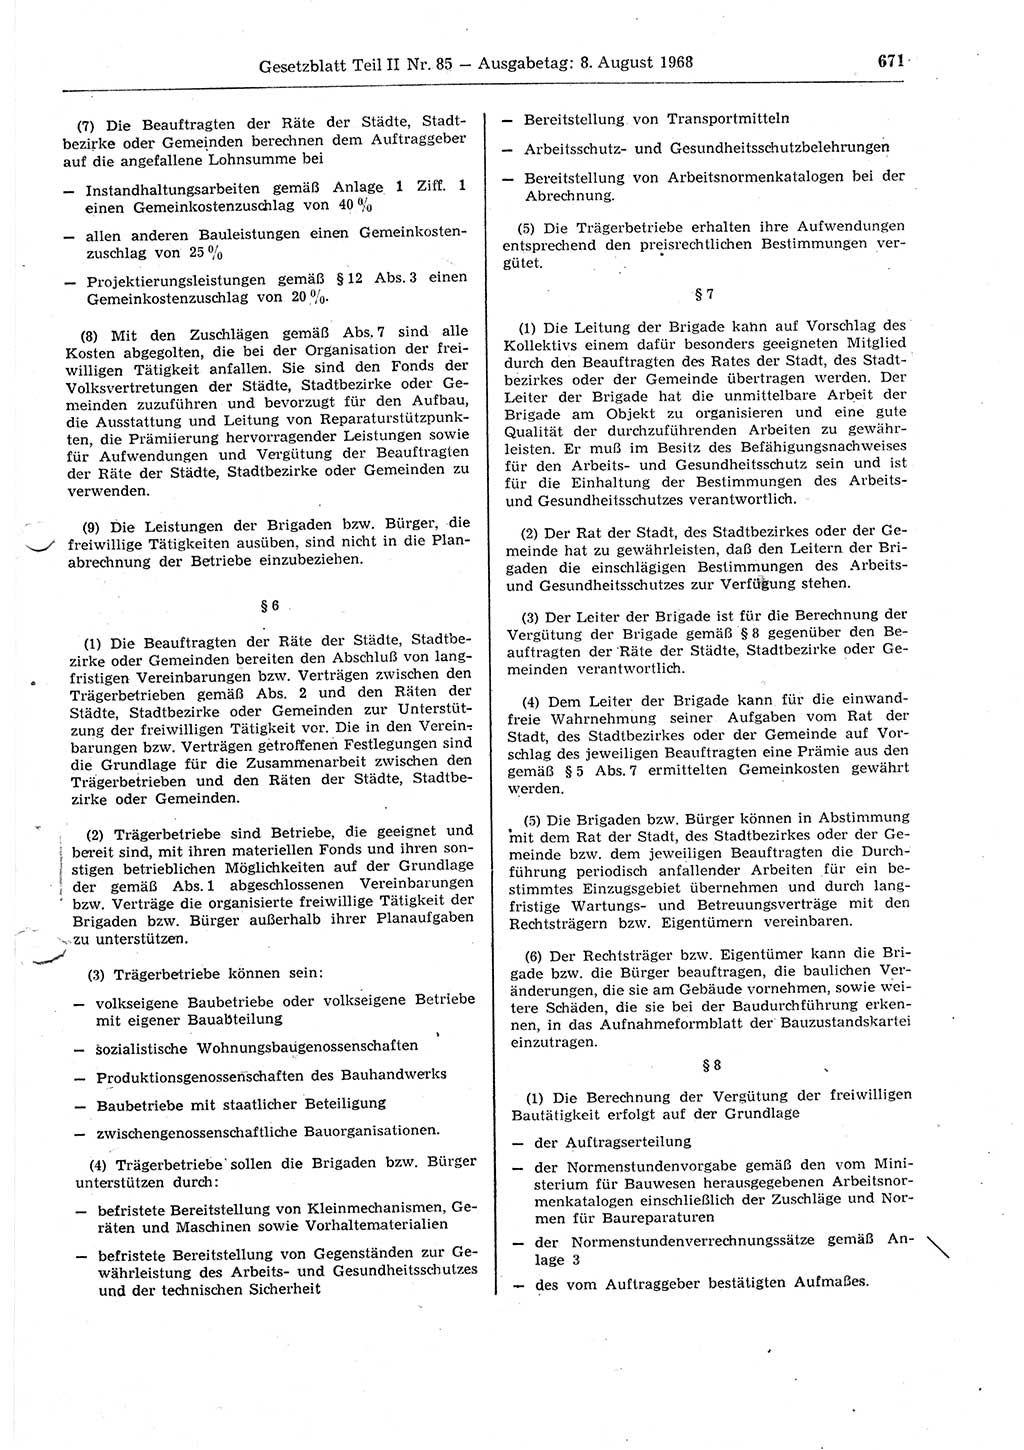 Gesetzblatt (GBl.) der Deutschen Demokratischen Republik (DDR) Teil ⅠⅠ 1968, Seite 671 (GBl. DDR ⅠⅠ 1968, S. 671)